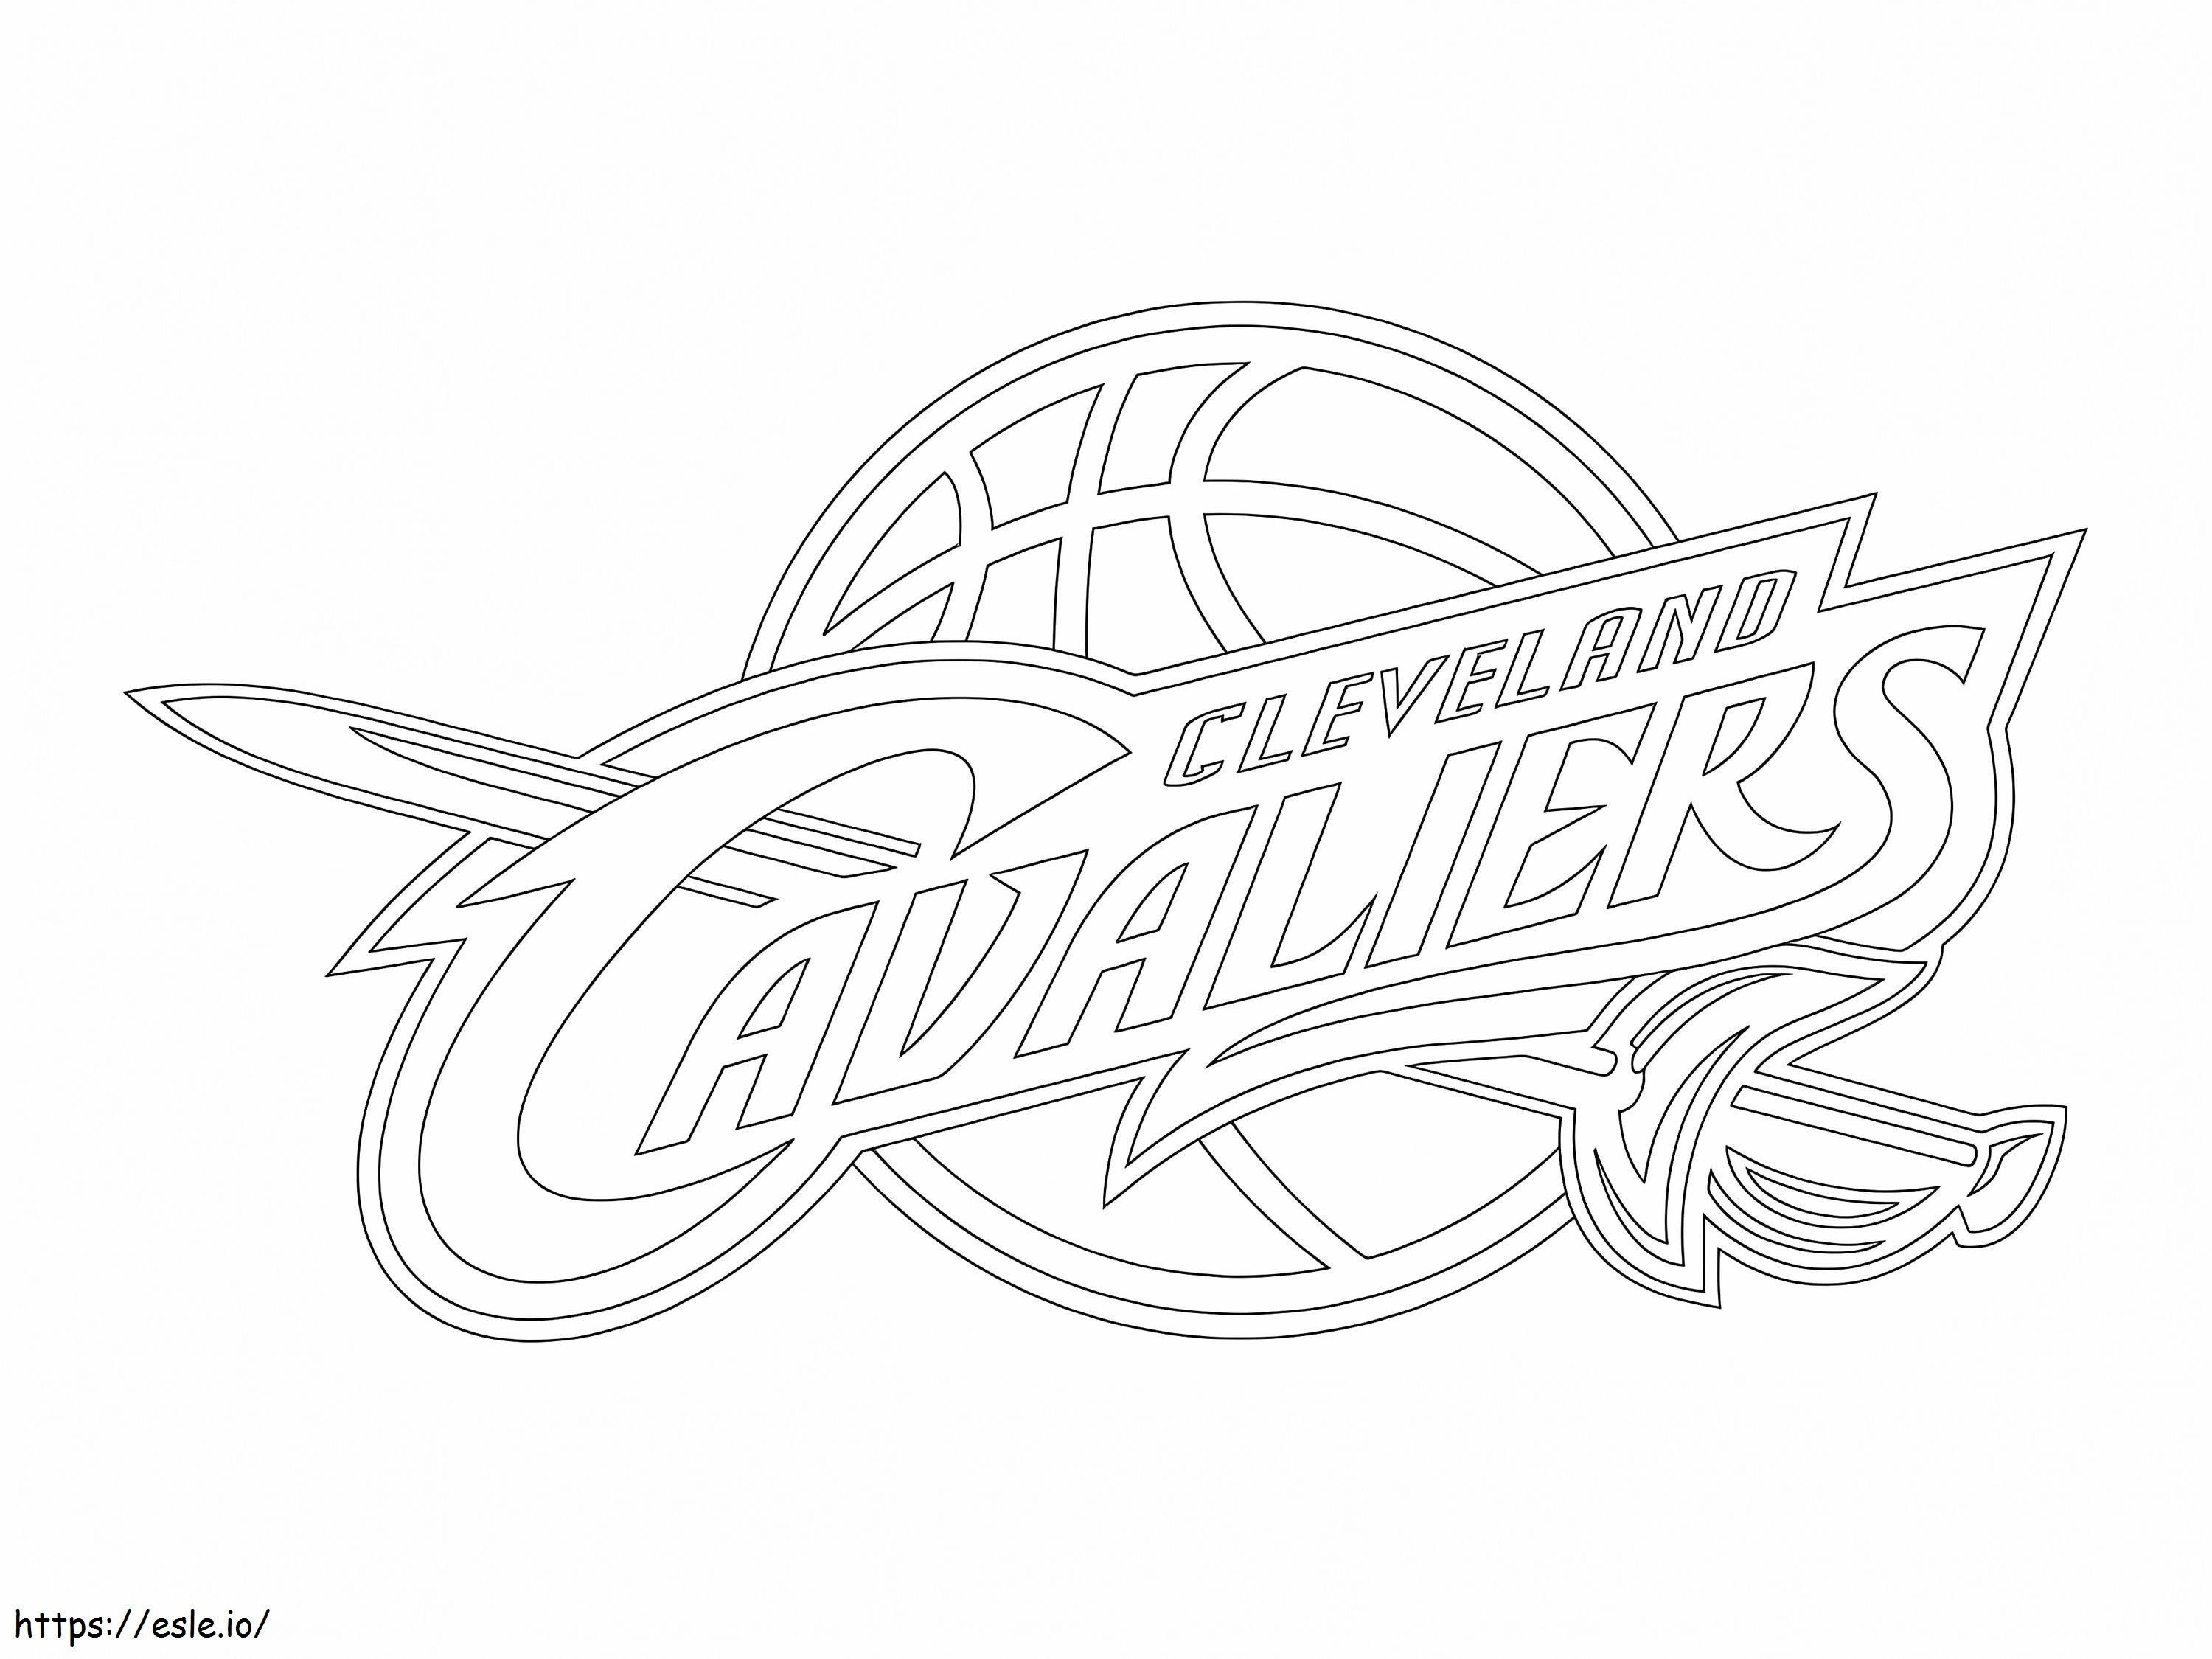 Coloriage Logo Cavaliers de Cleveland à imprimer dessin